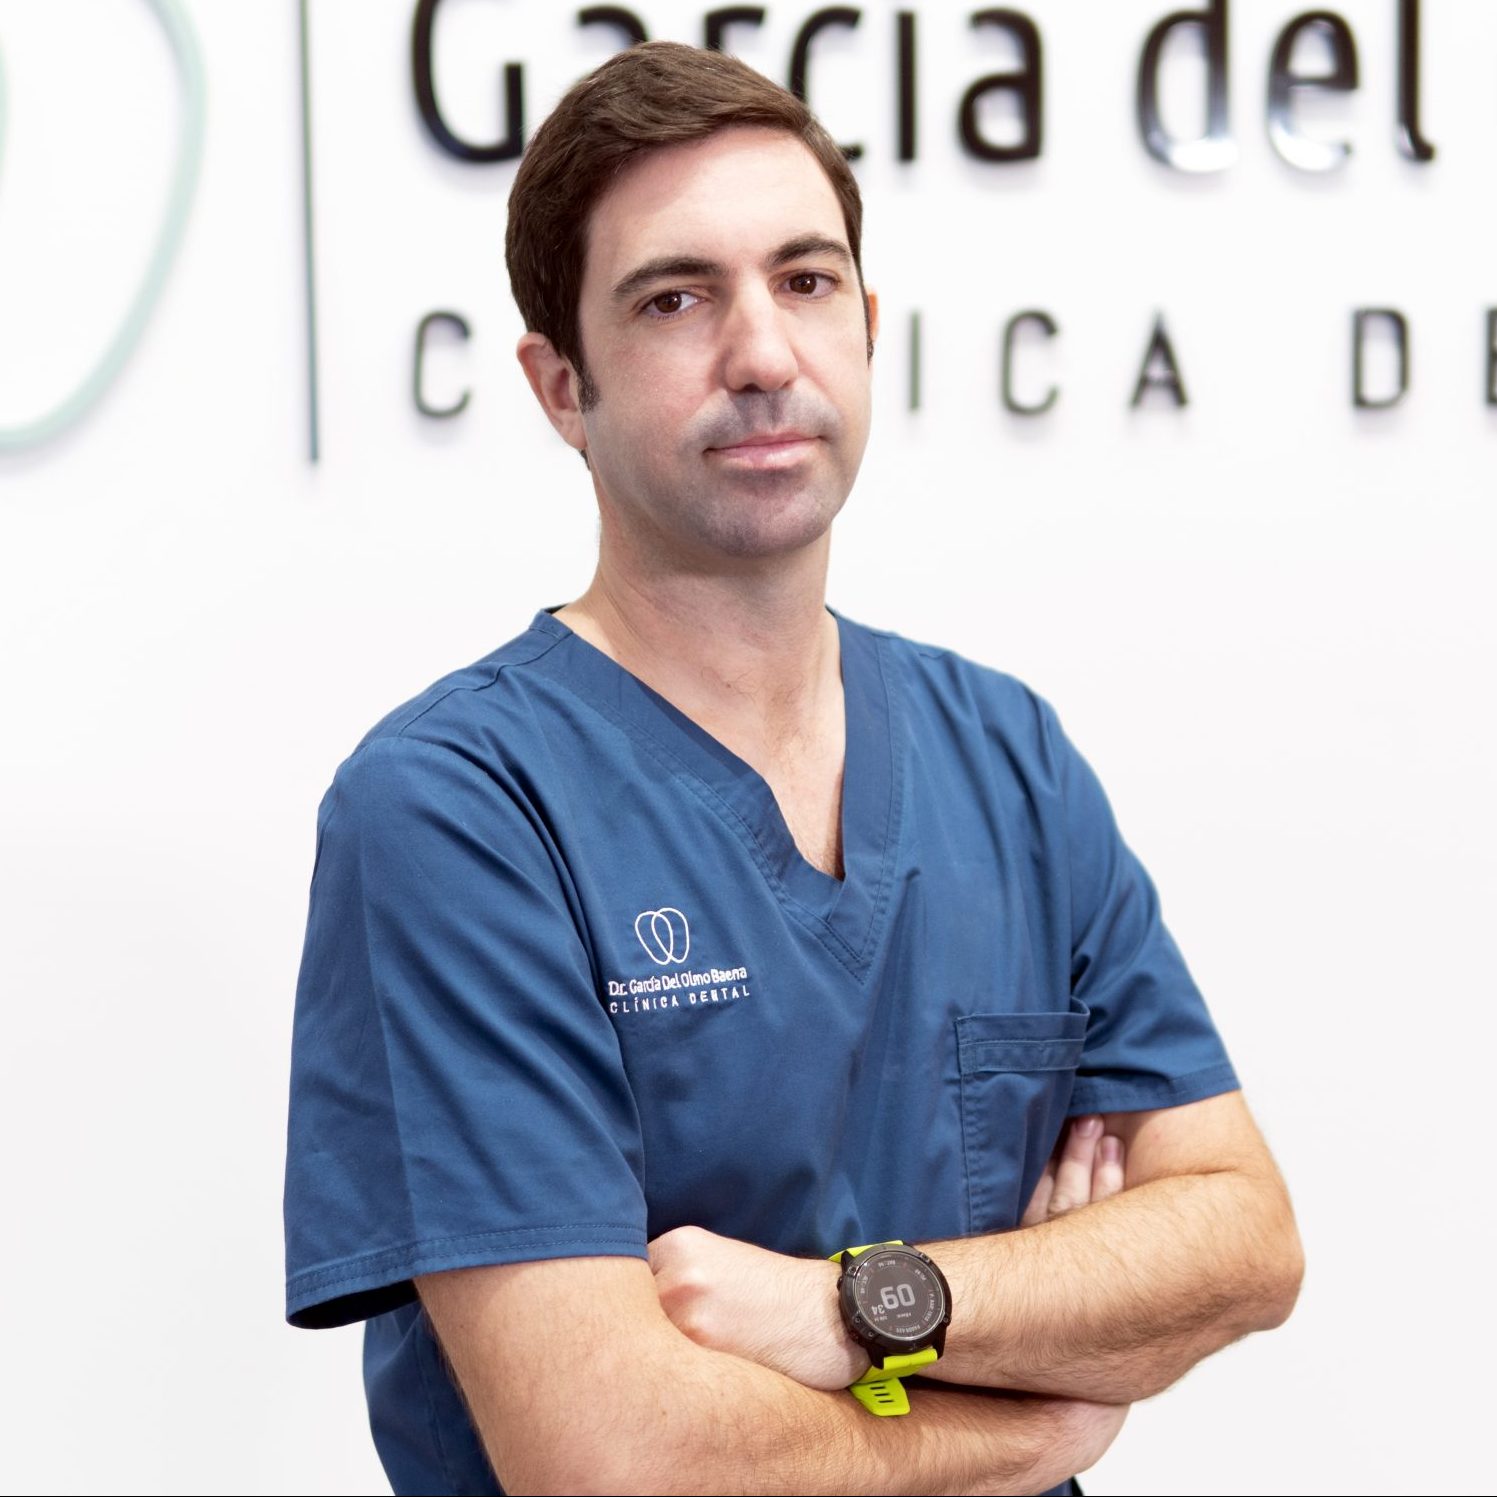 Clínica Dental García del Olmo, Dr. José Fernando García del Olmo, Implantología y Cirugía Oral